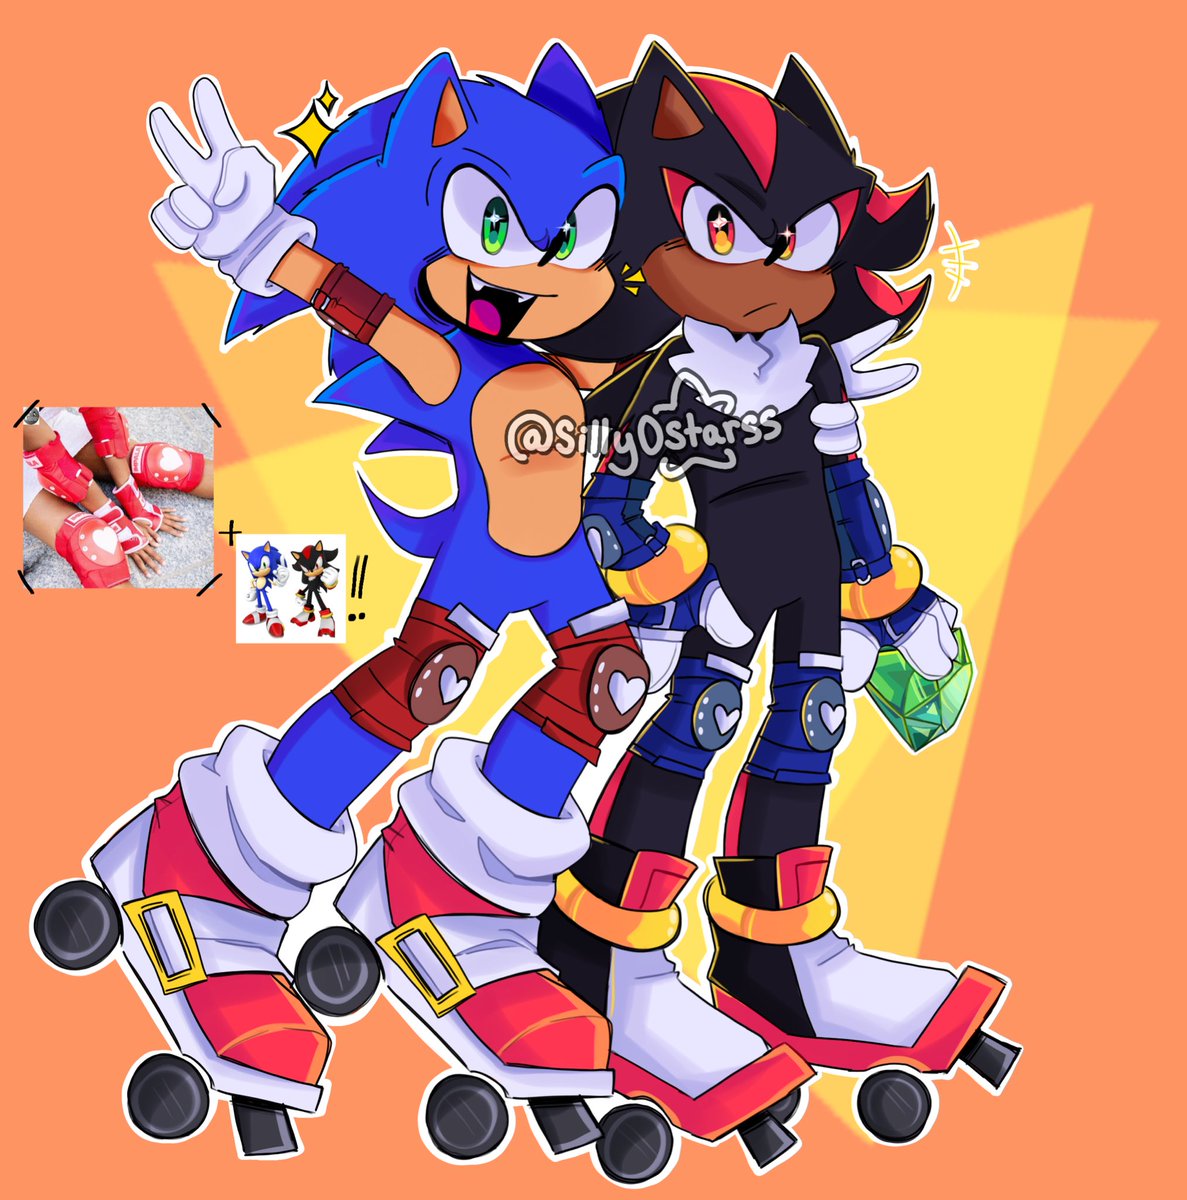 Sonic + Shadow in Quad Rollerskates!! #Sonic #sonicfanart #ShadowTheHedgehog